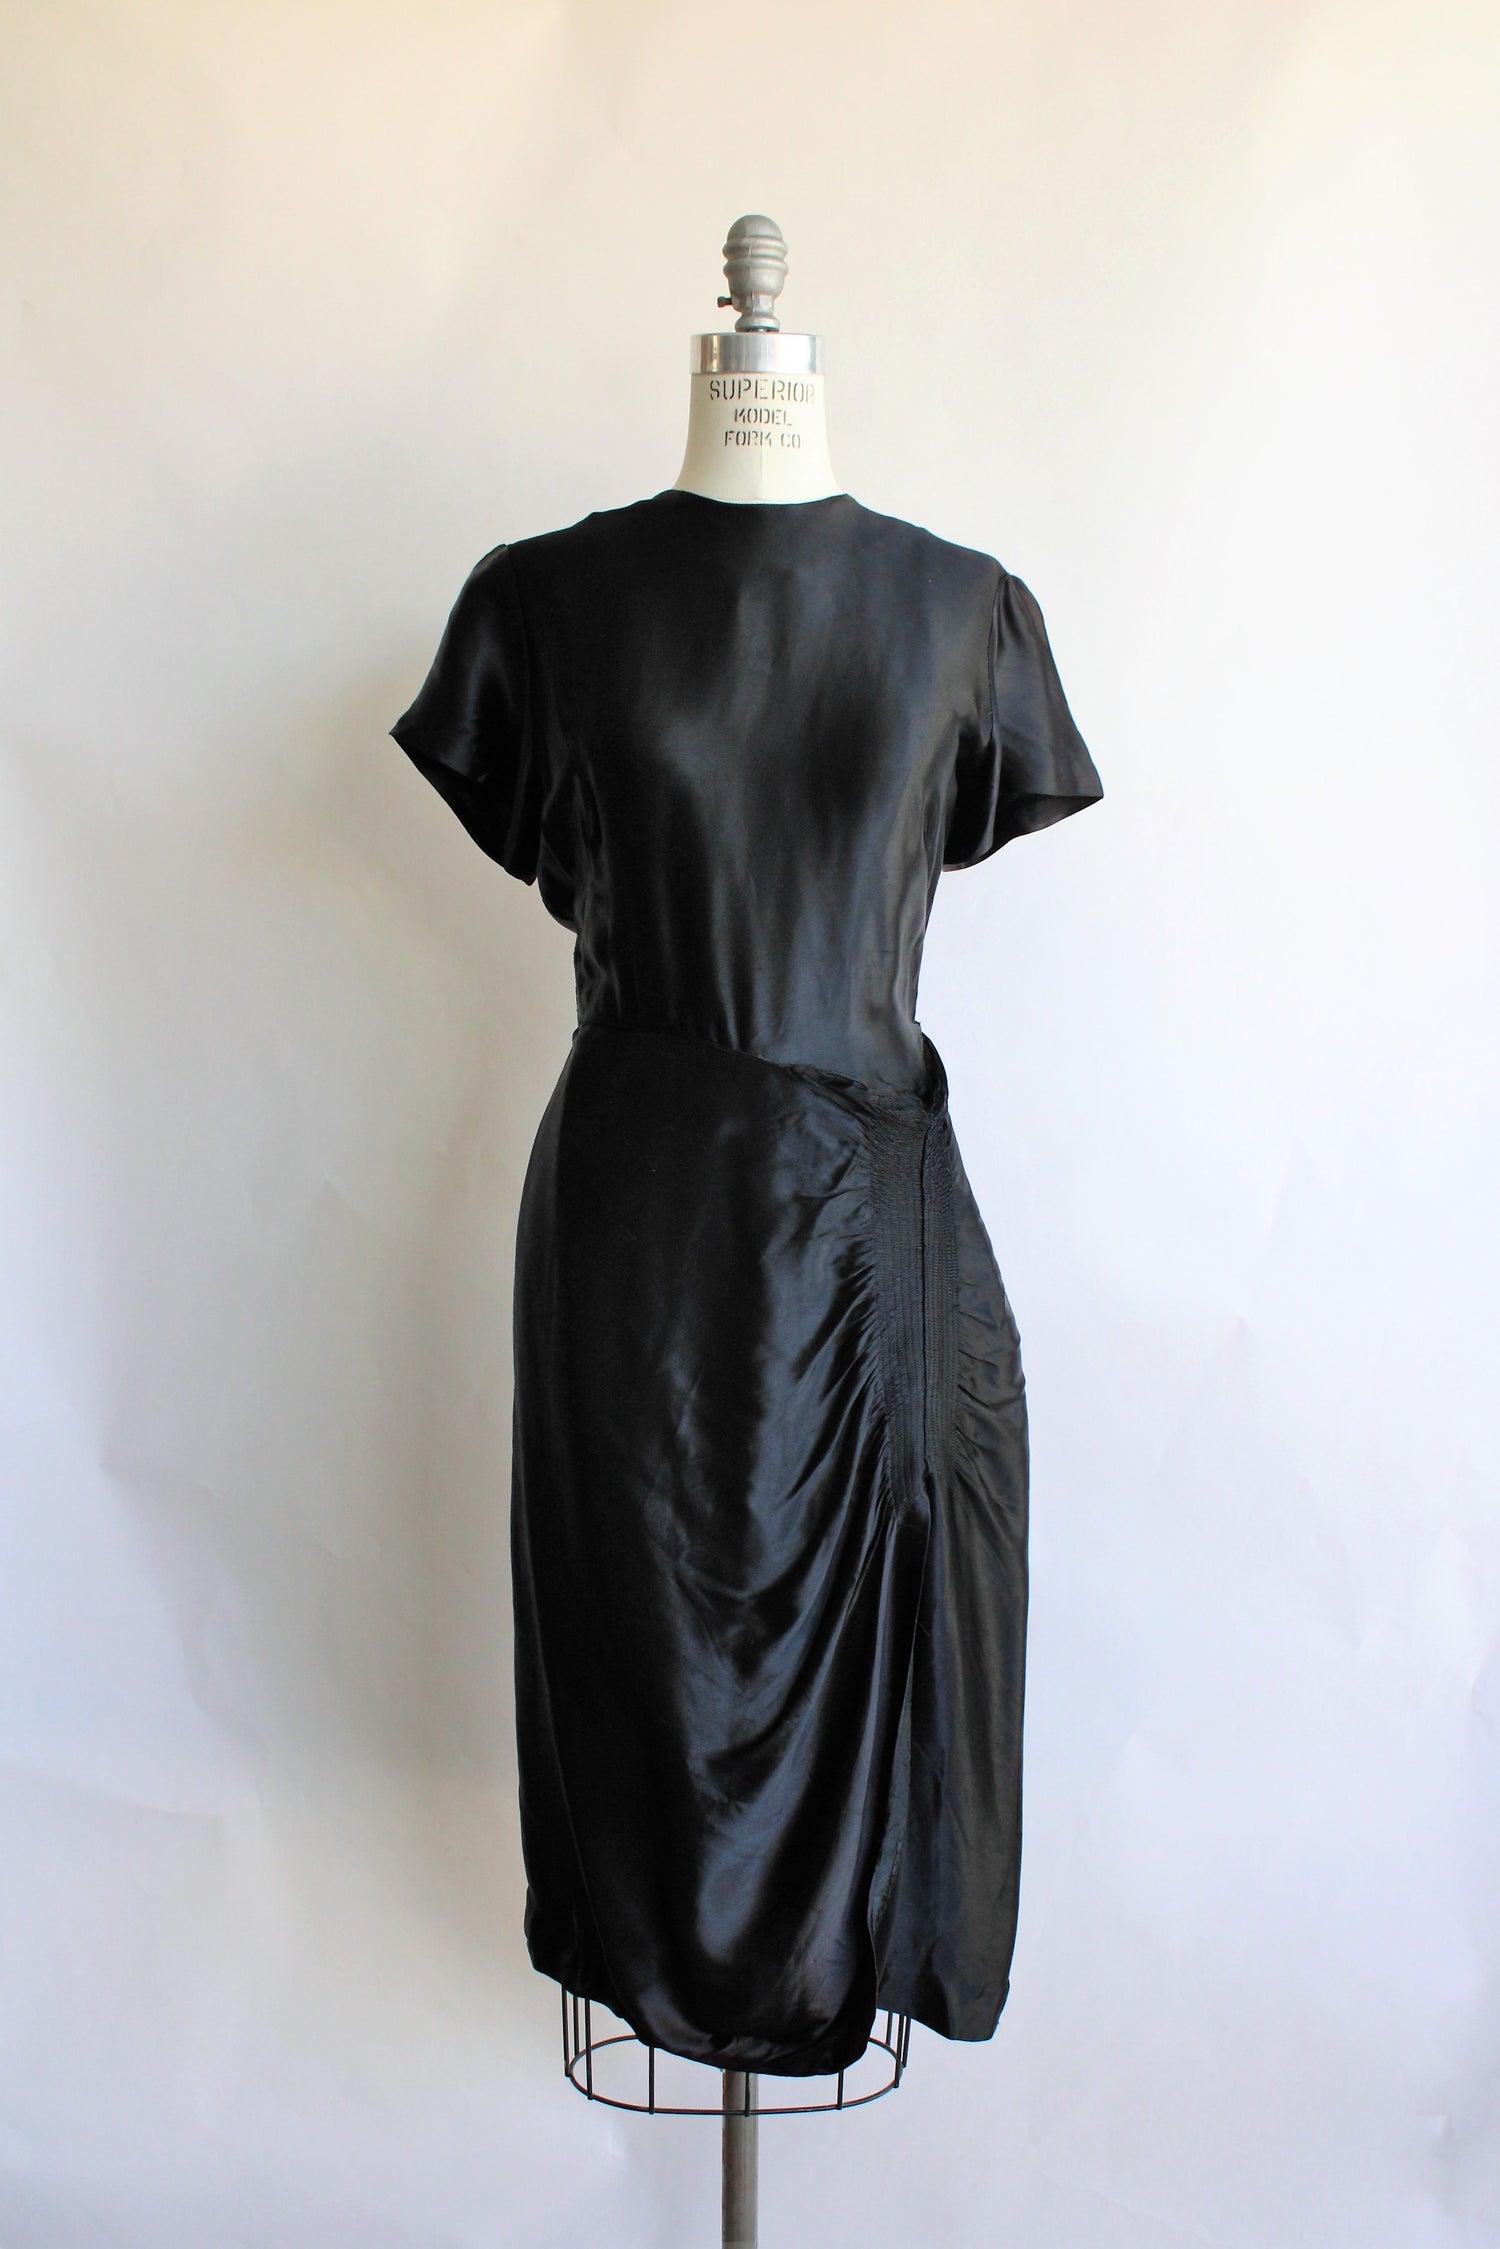 Vintage 1950s Black Satin Cocktail Dress With Smocking